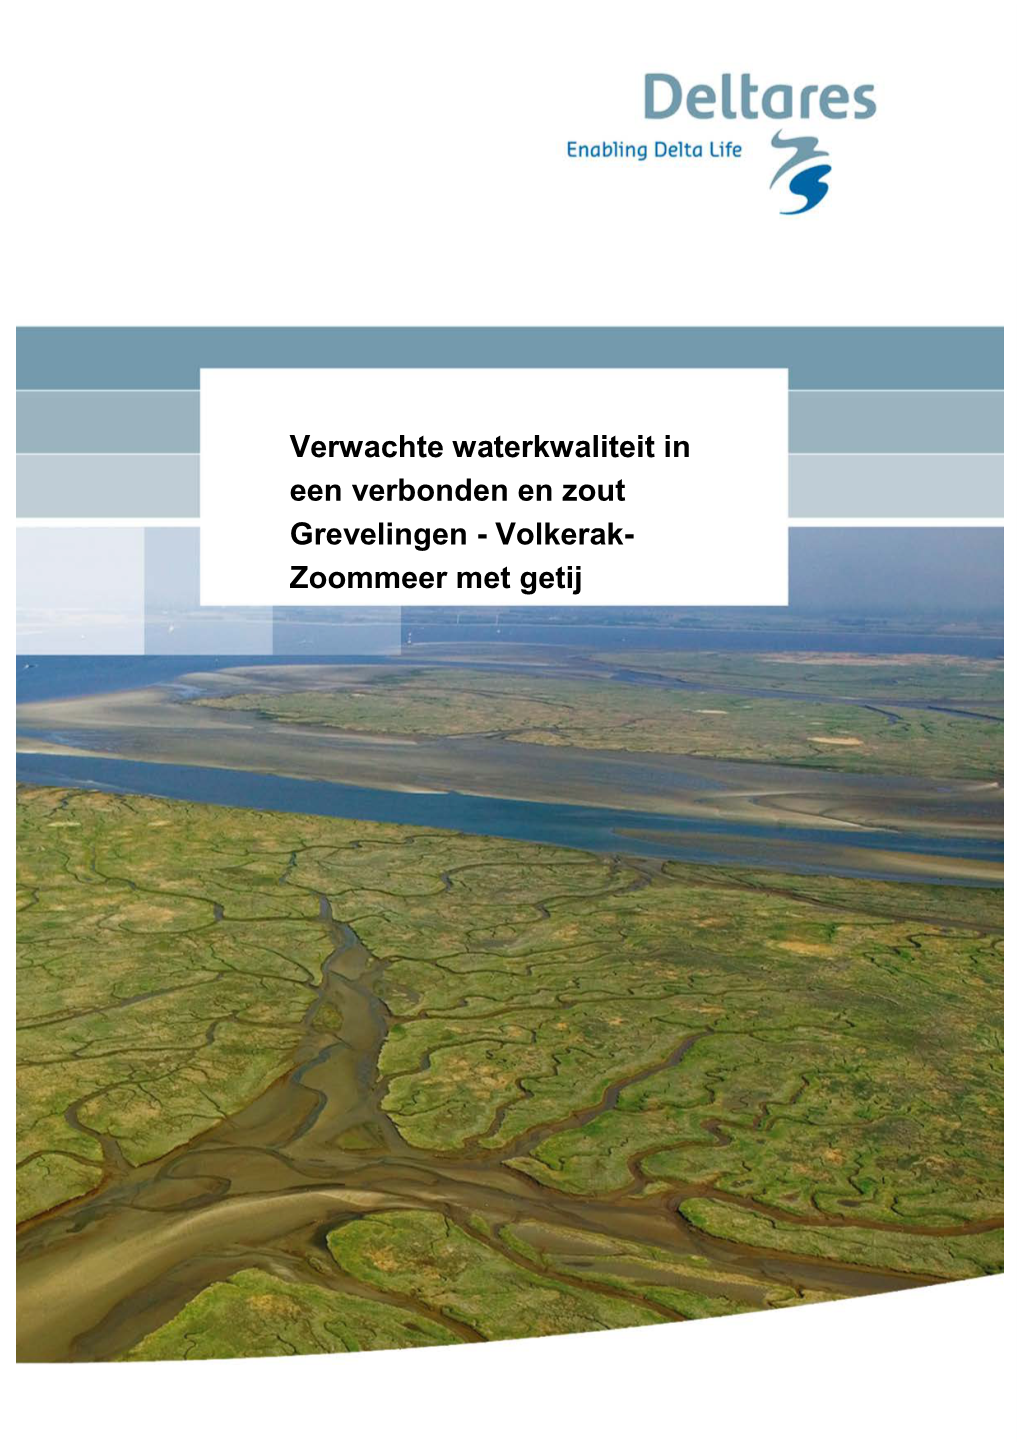 Verwachte Waterkwaliteit in Een Verbonden En Zout Grevelingen - Volkerak- Zoommeer Met Getij